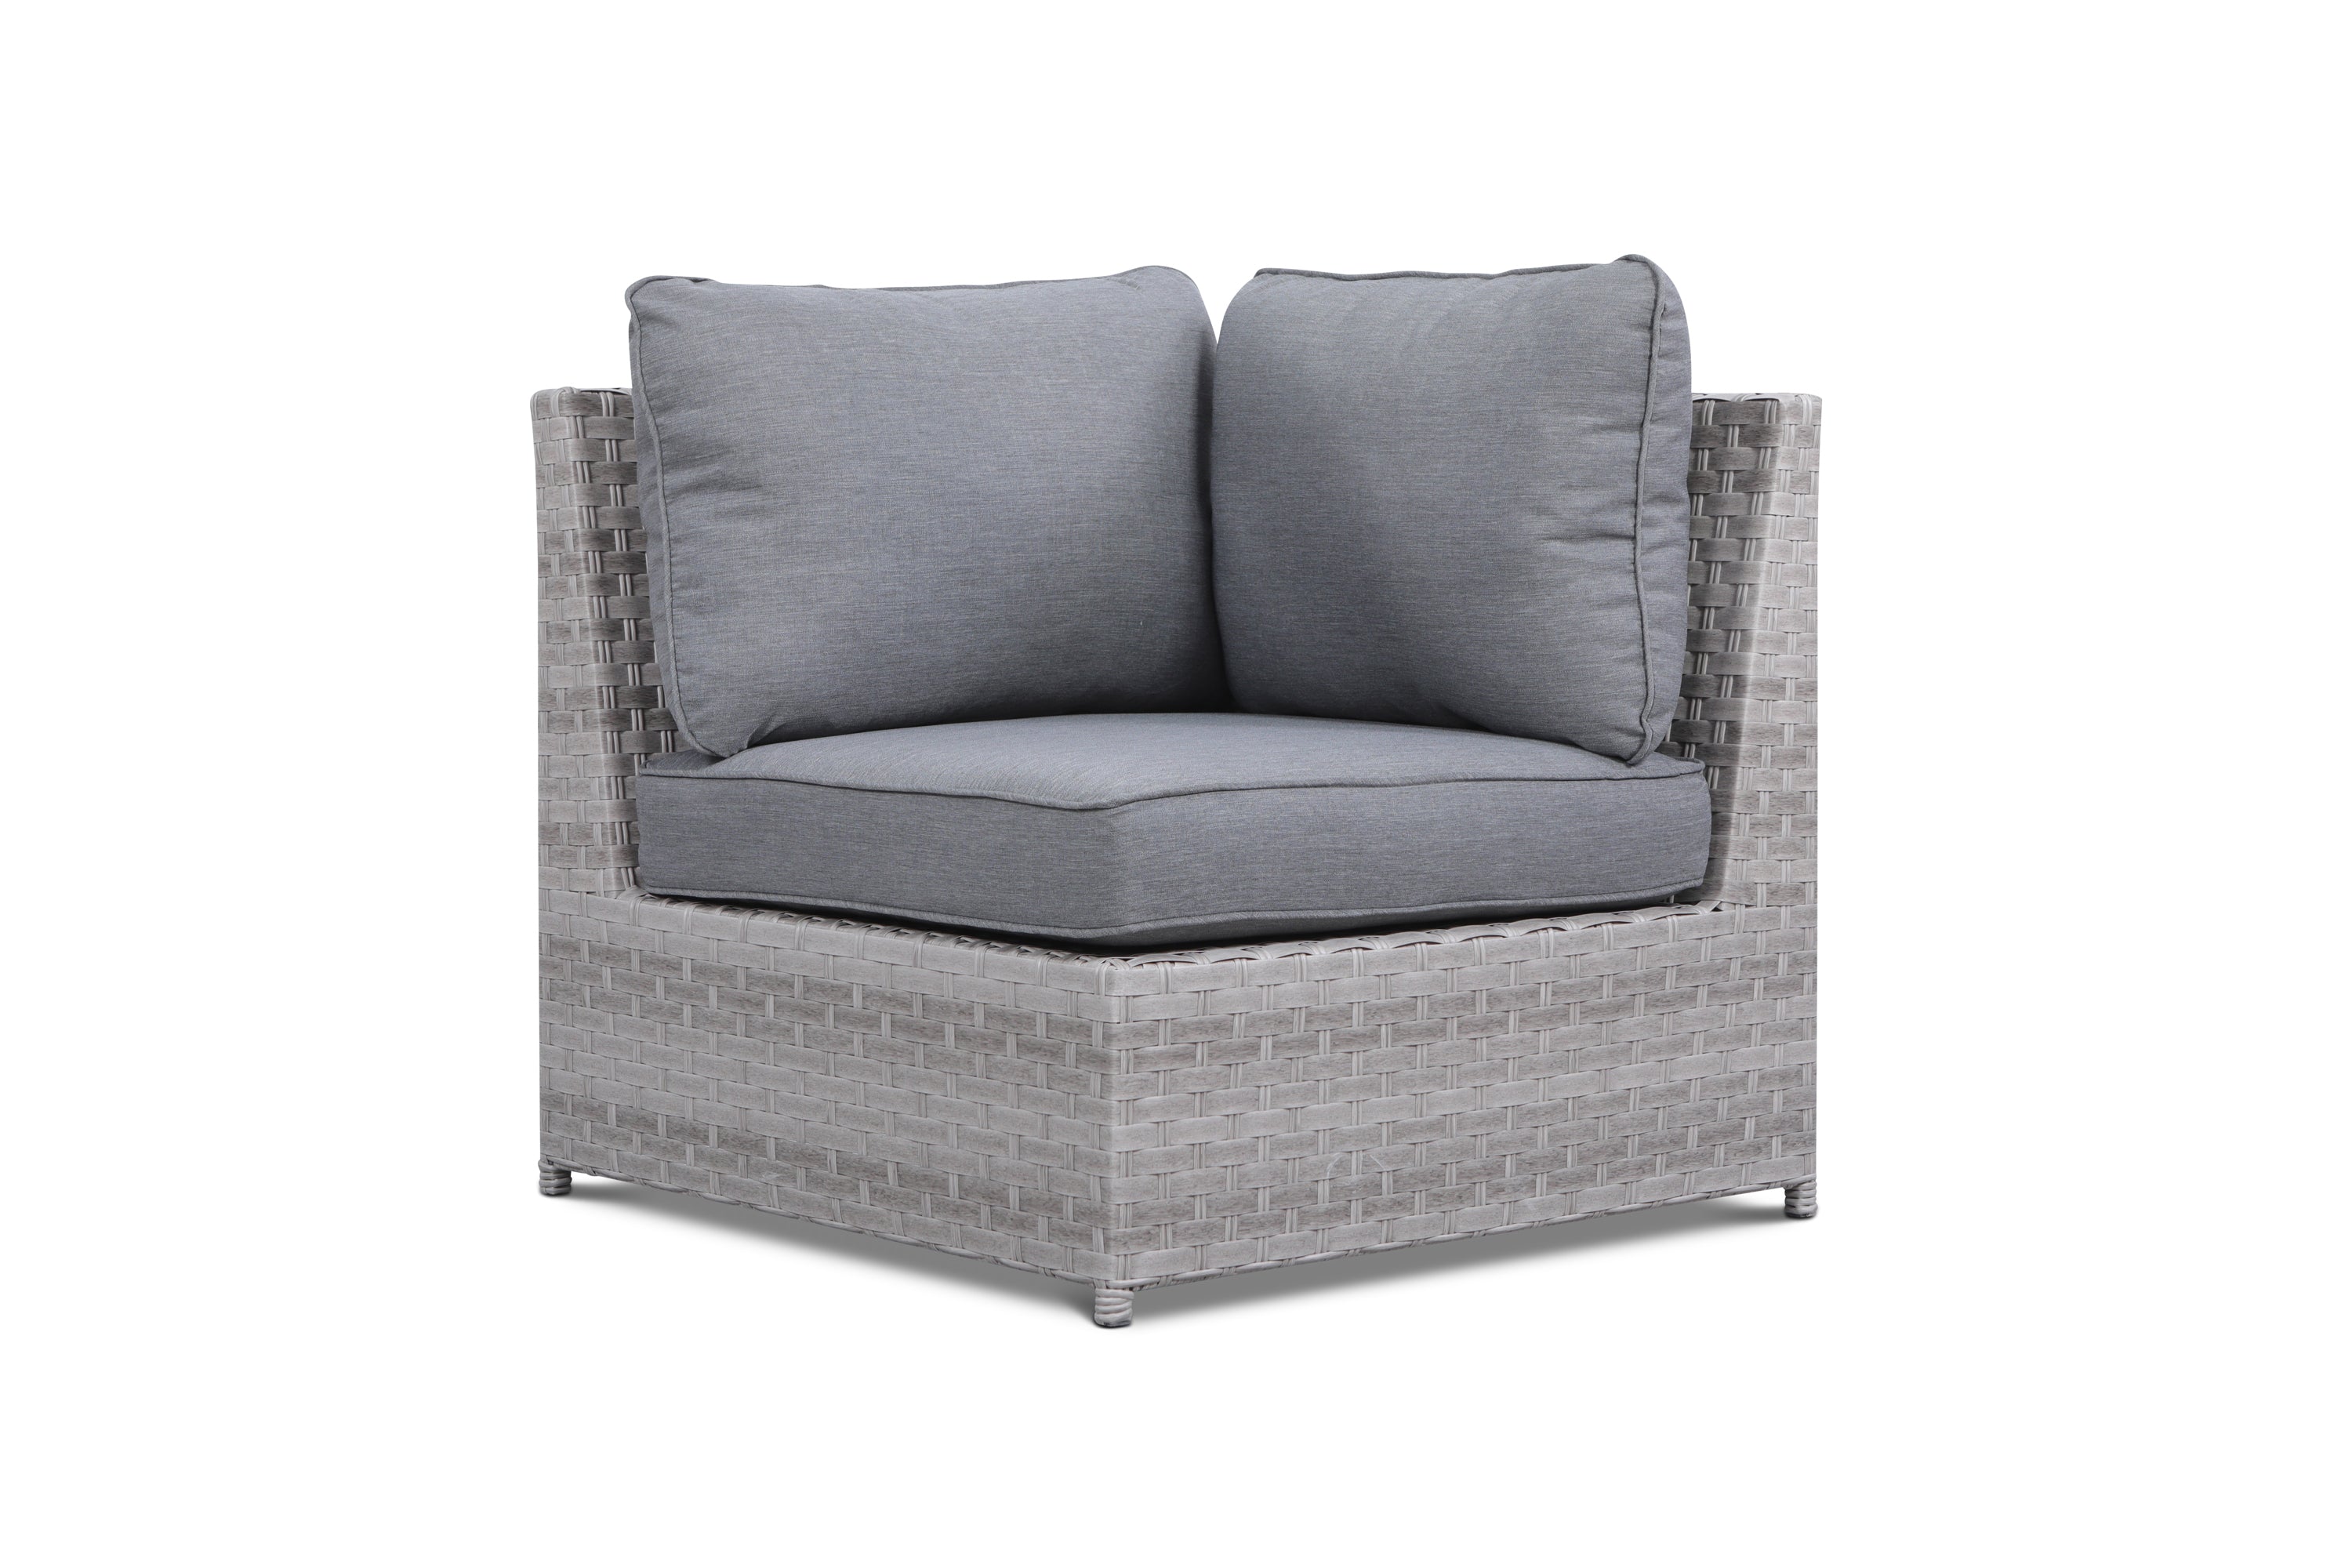 Kensington Grey 9 Piece Outdoor Modular Sofa Set